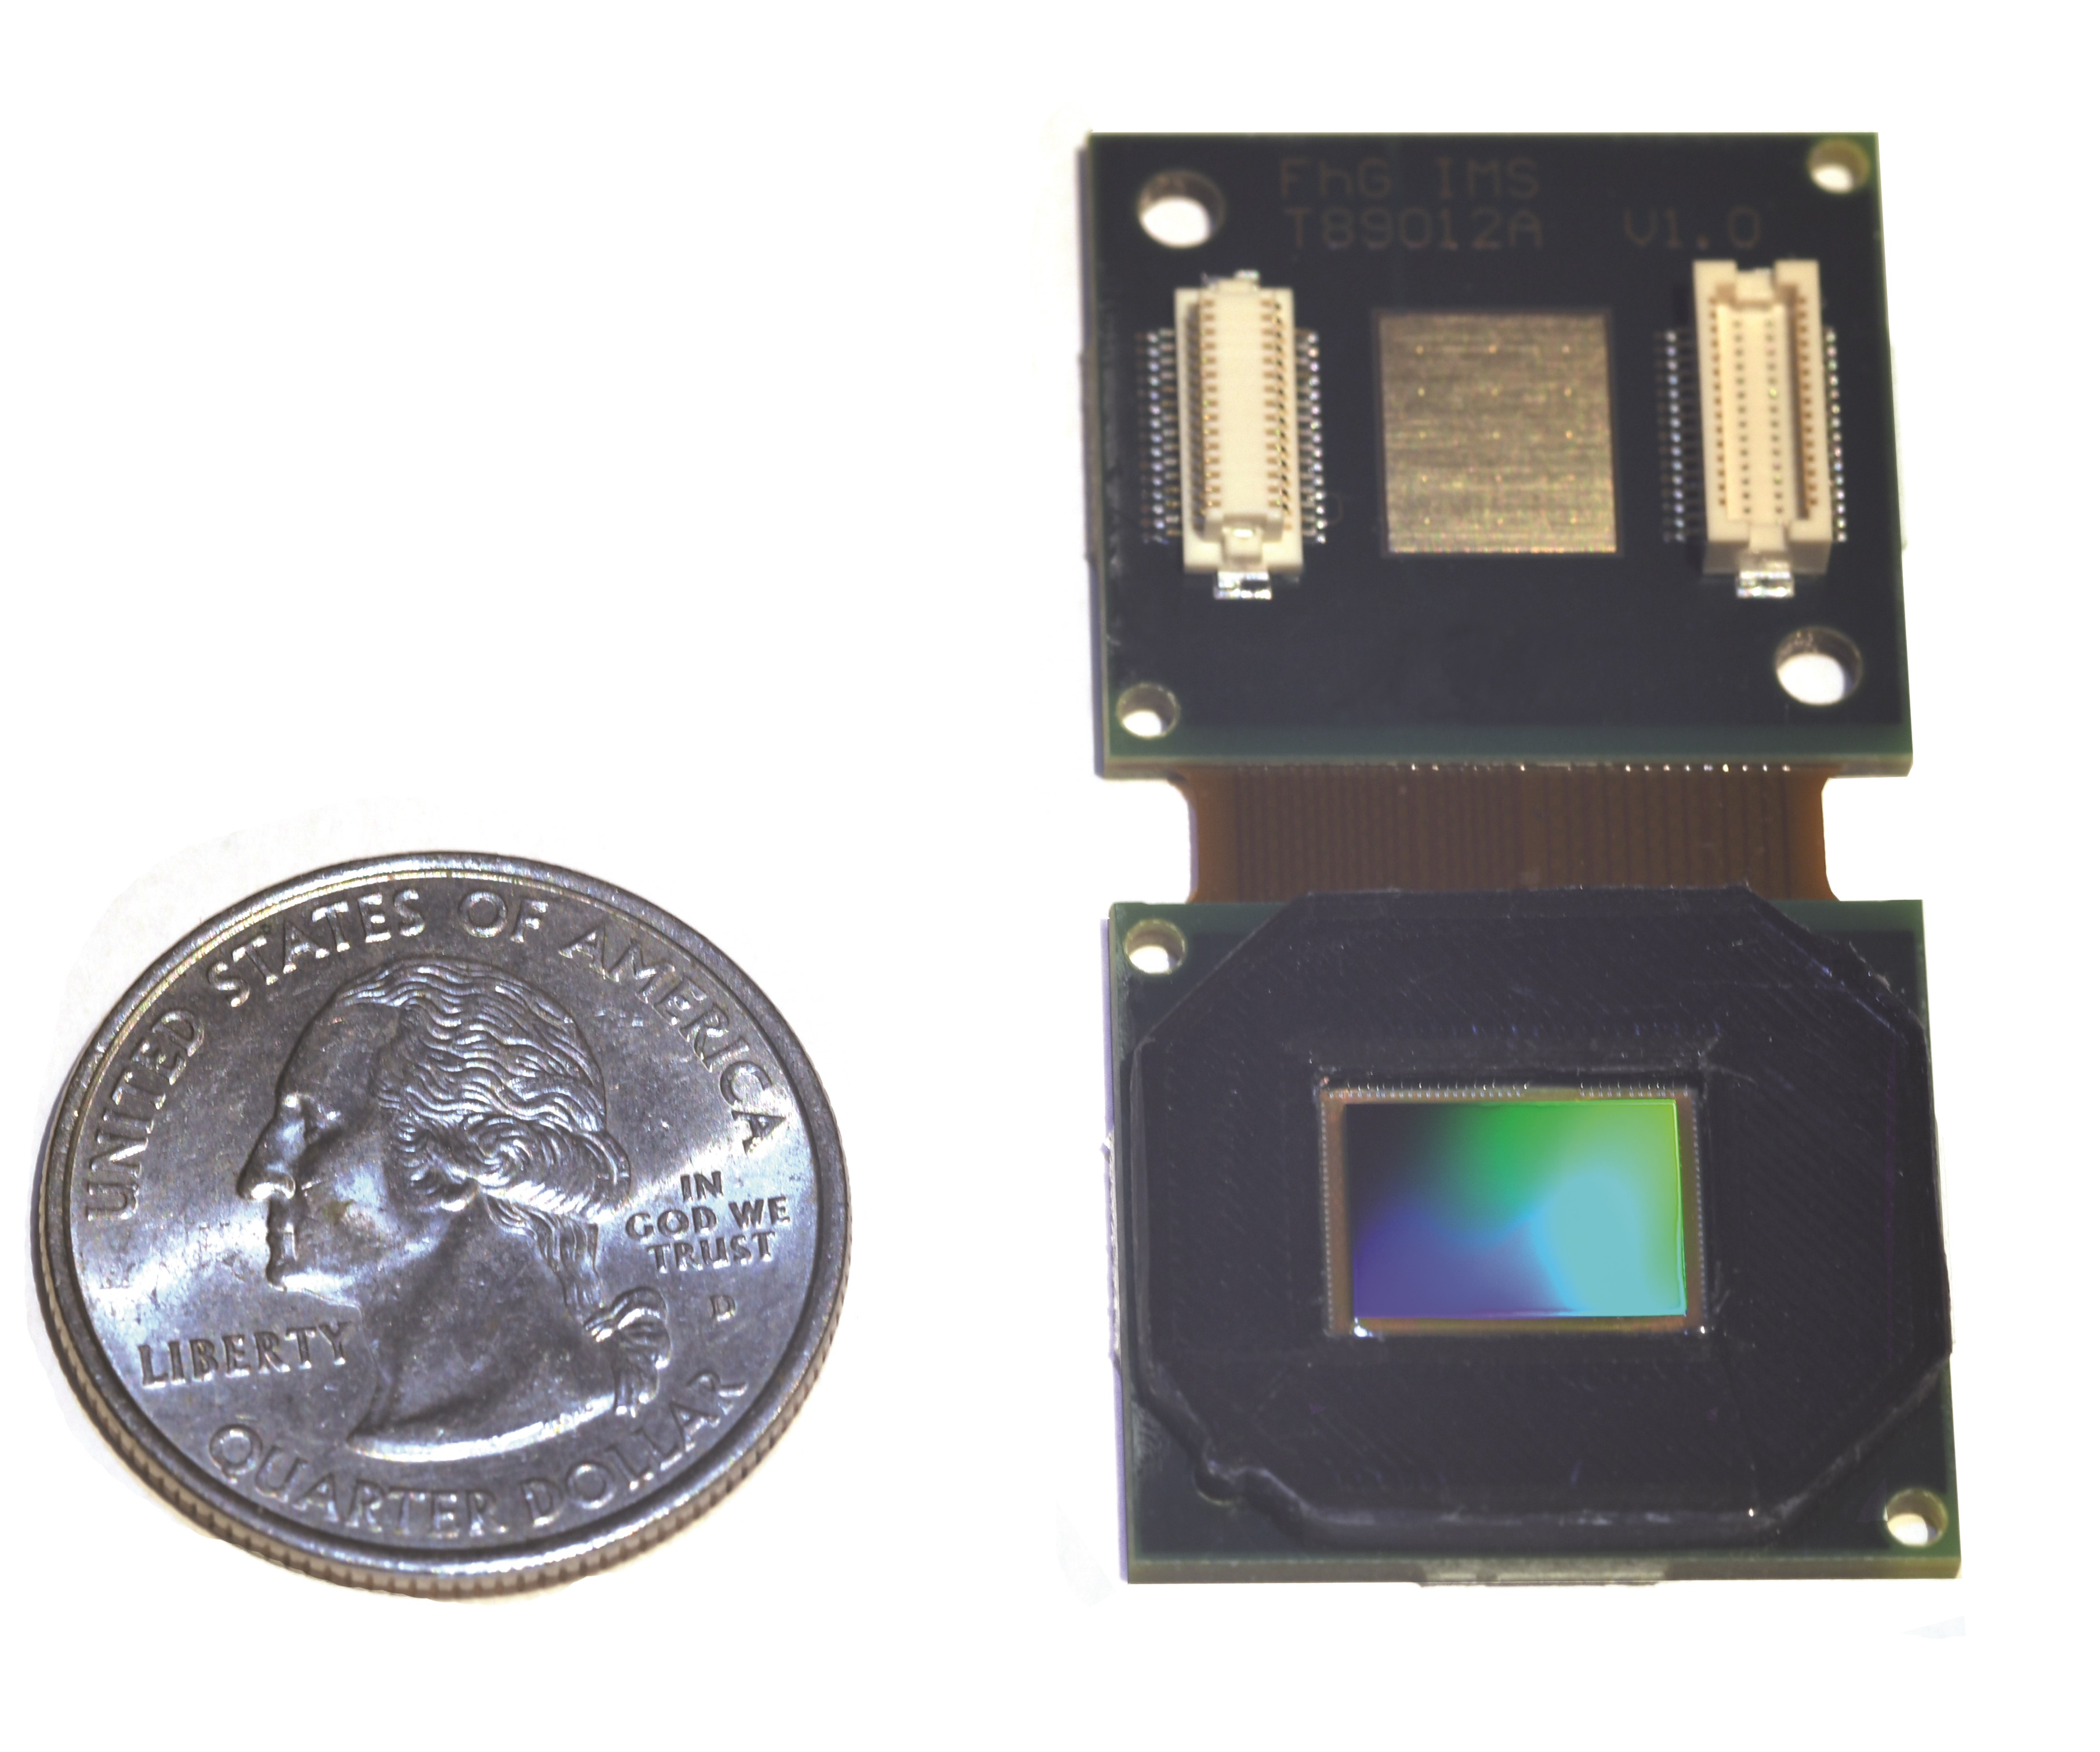 Digitale 17 μm QVGA-IRFPAs montiert auf Detektorboard inklusive Schutzkappe ist im Vergleich zu einer Vierteldollar-Münze angezeigt.